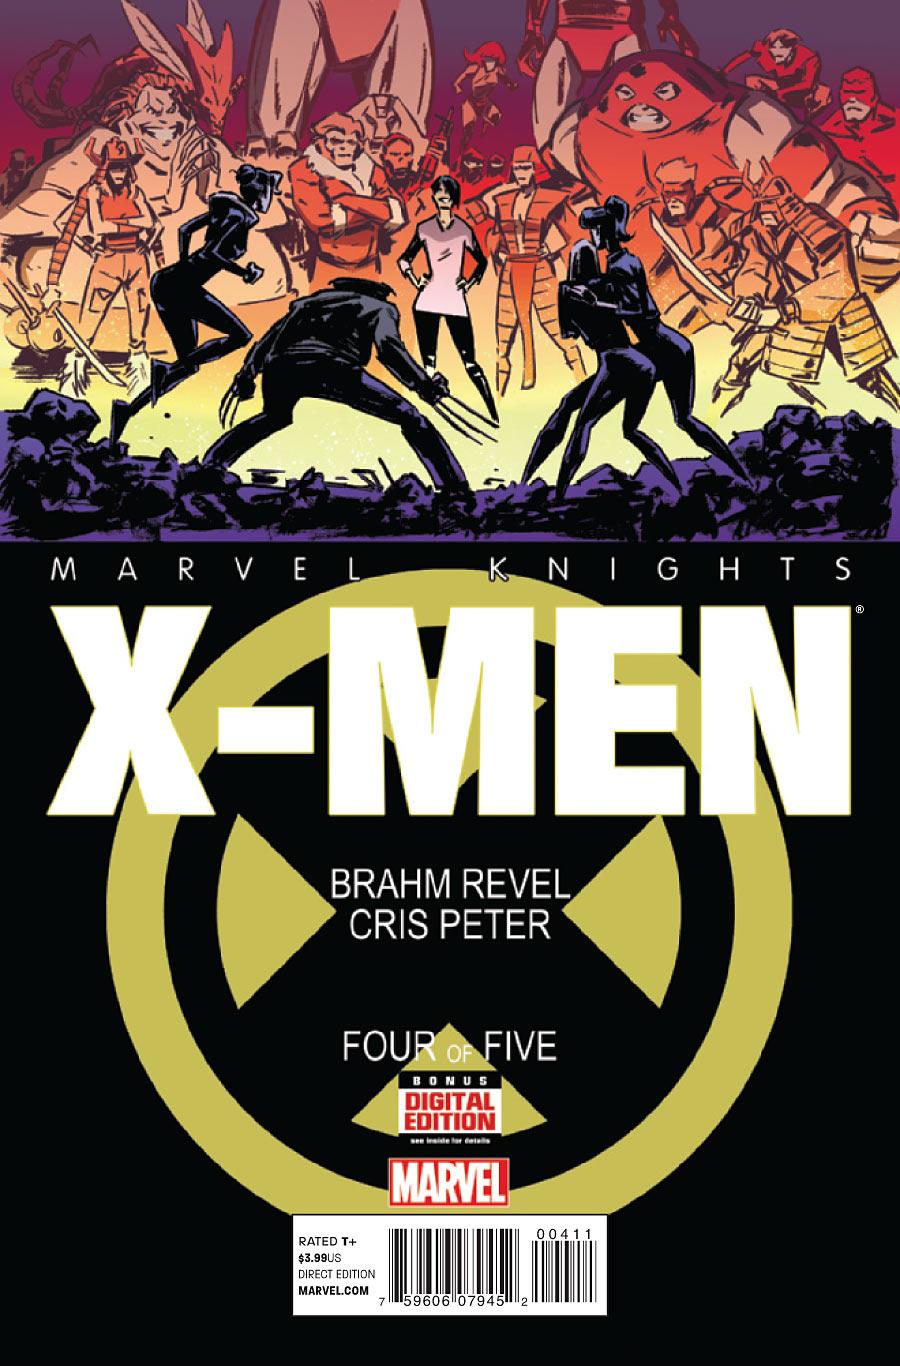 Marvel Knights: X-Men Vol. 1 #4